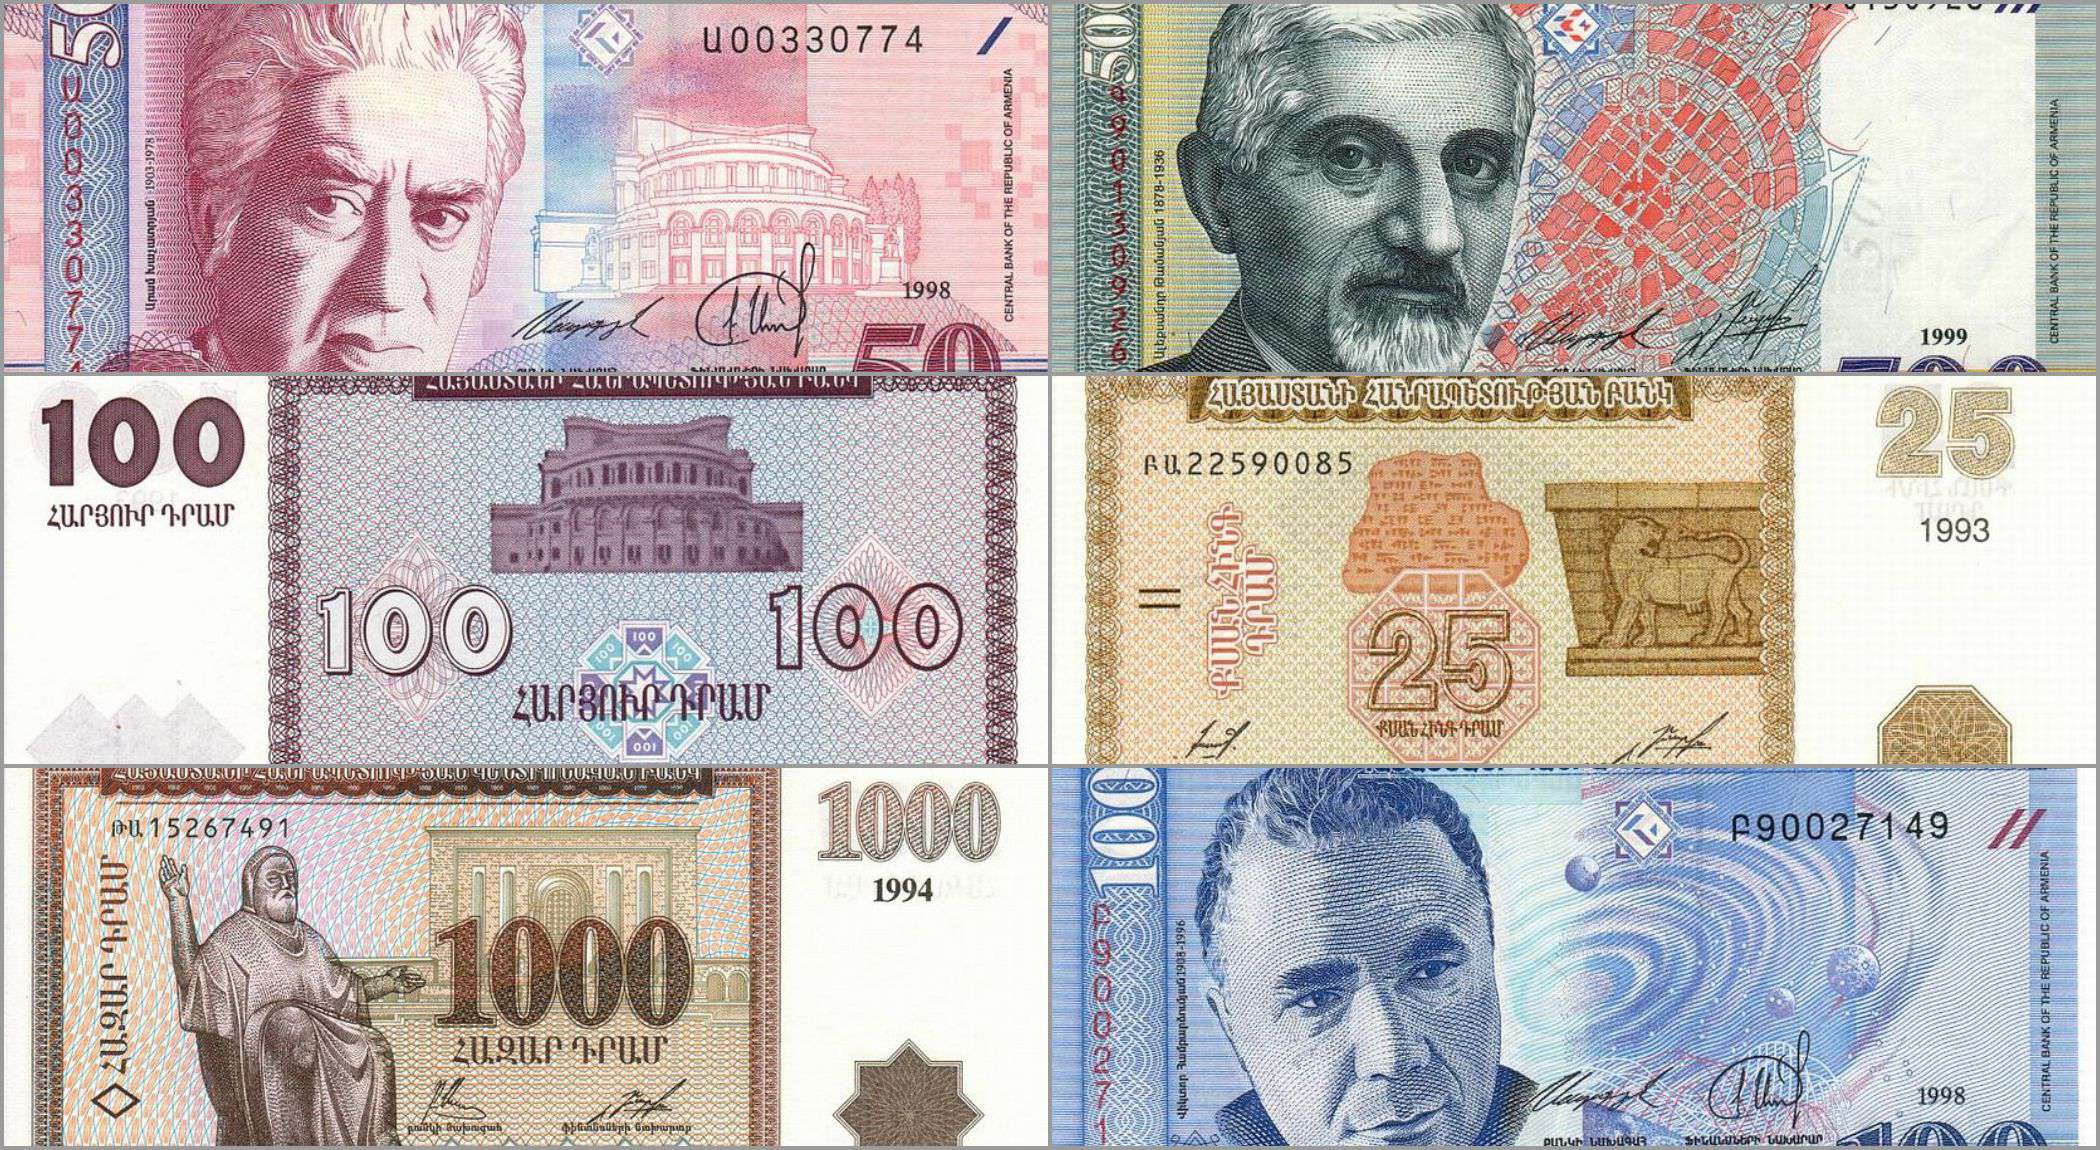 Ermenistan Ulusal Para Birimi dram 30 yaşında